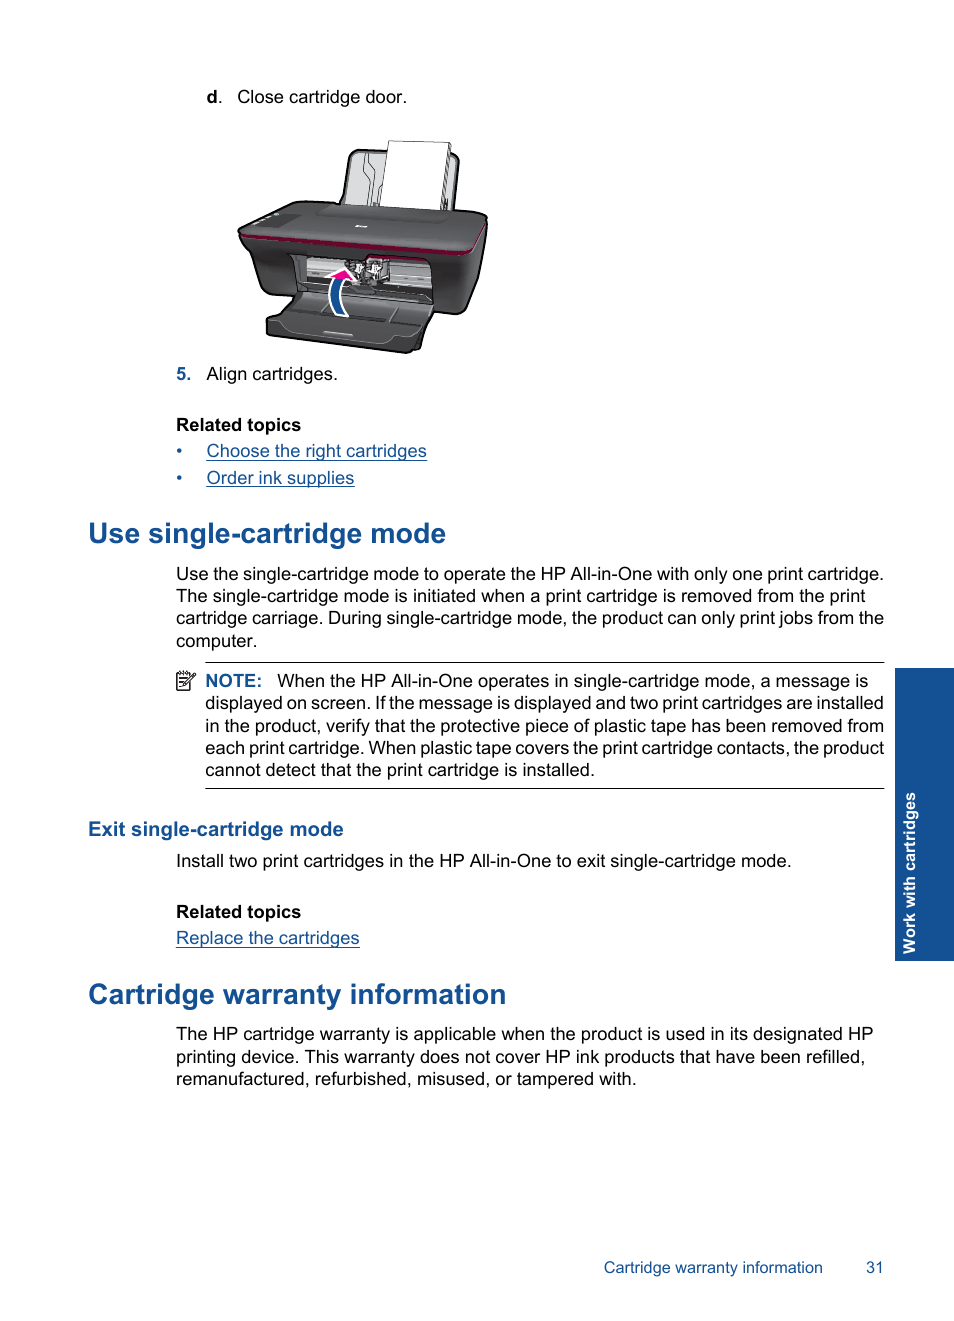 Use single-cartridge mode, Exit single-cartridge mode, Cartridge warranty information | HP Deskjet 2050 User Manual | Page 33 / 54